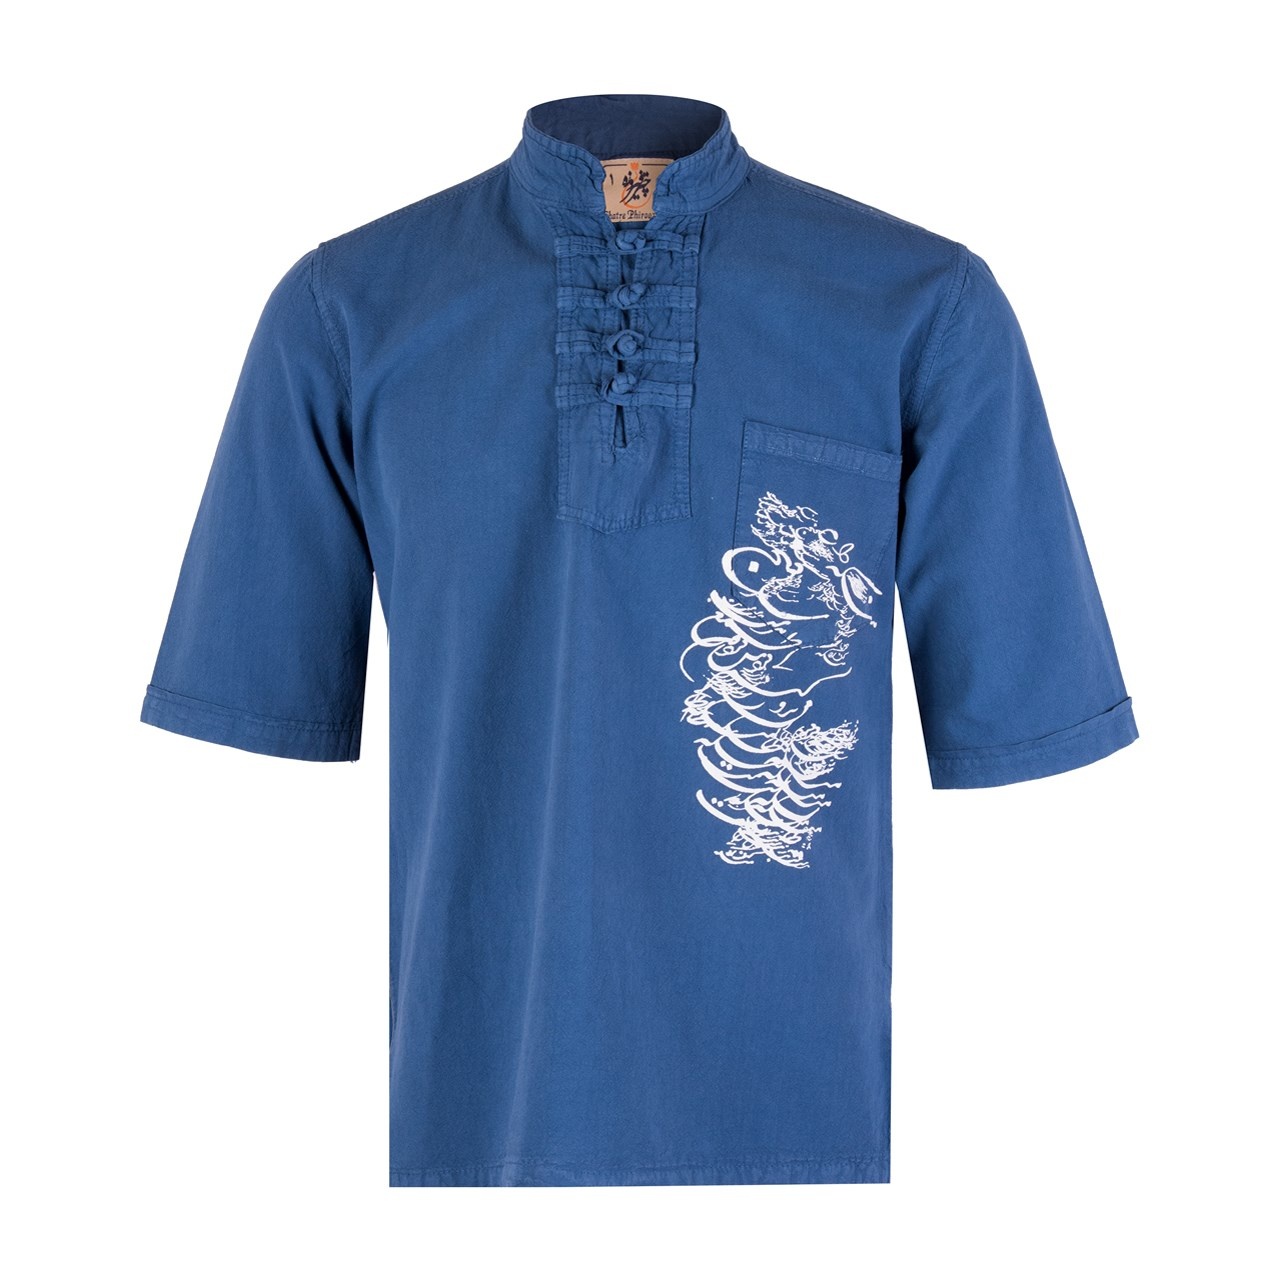 پیراهن مردانه الیاف طبیعی چترفیروزه مدل آستین کوتاه چاپی چهارگره آبی کد 5